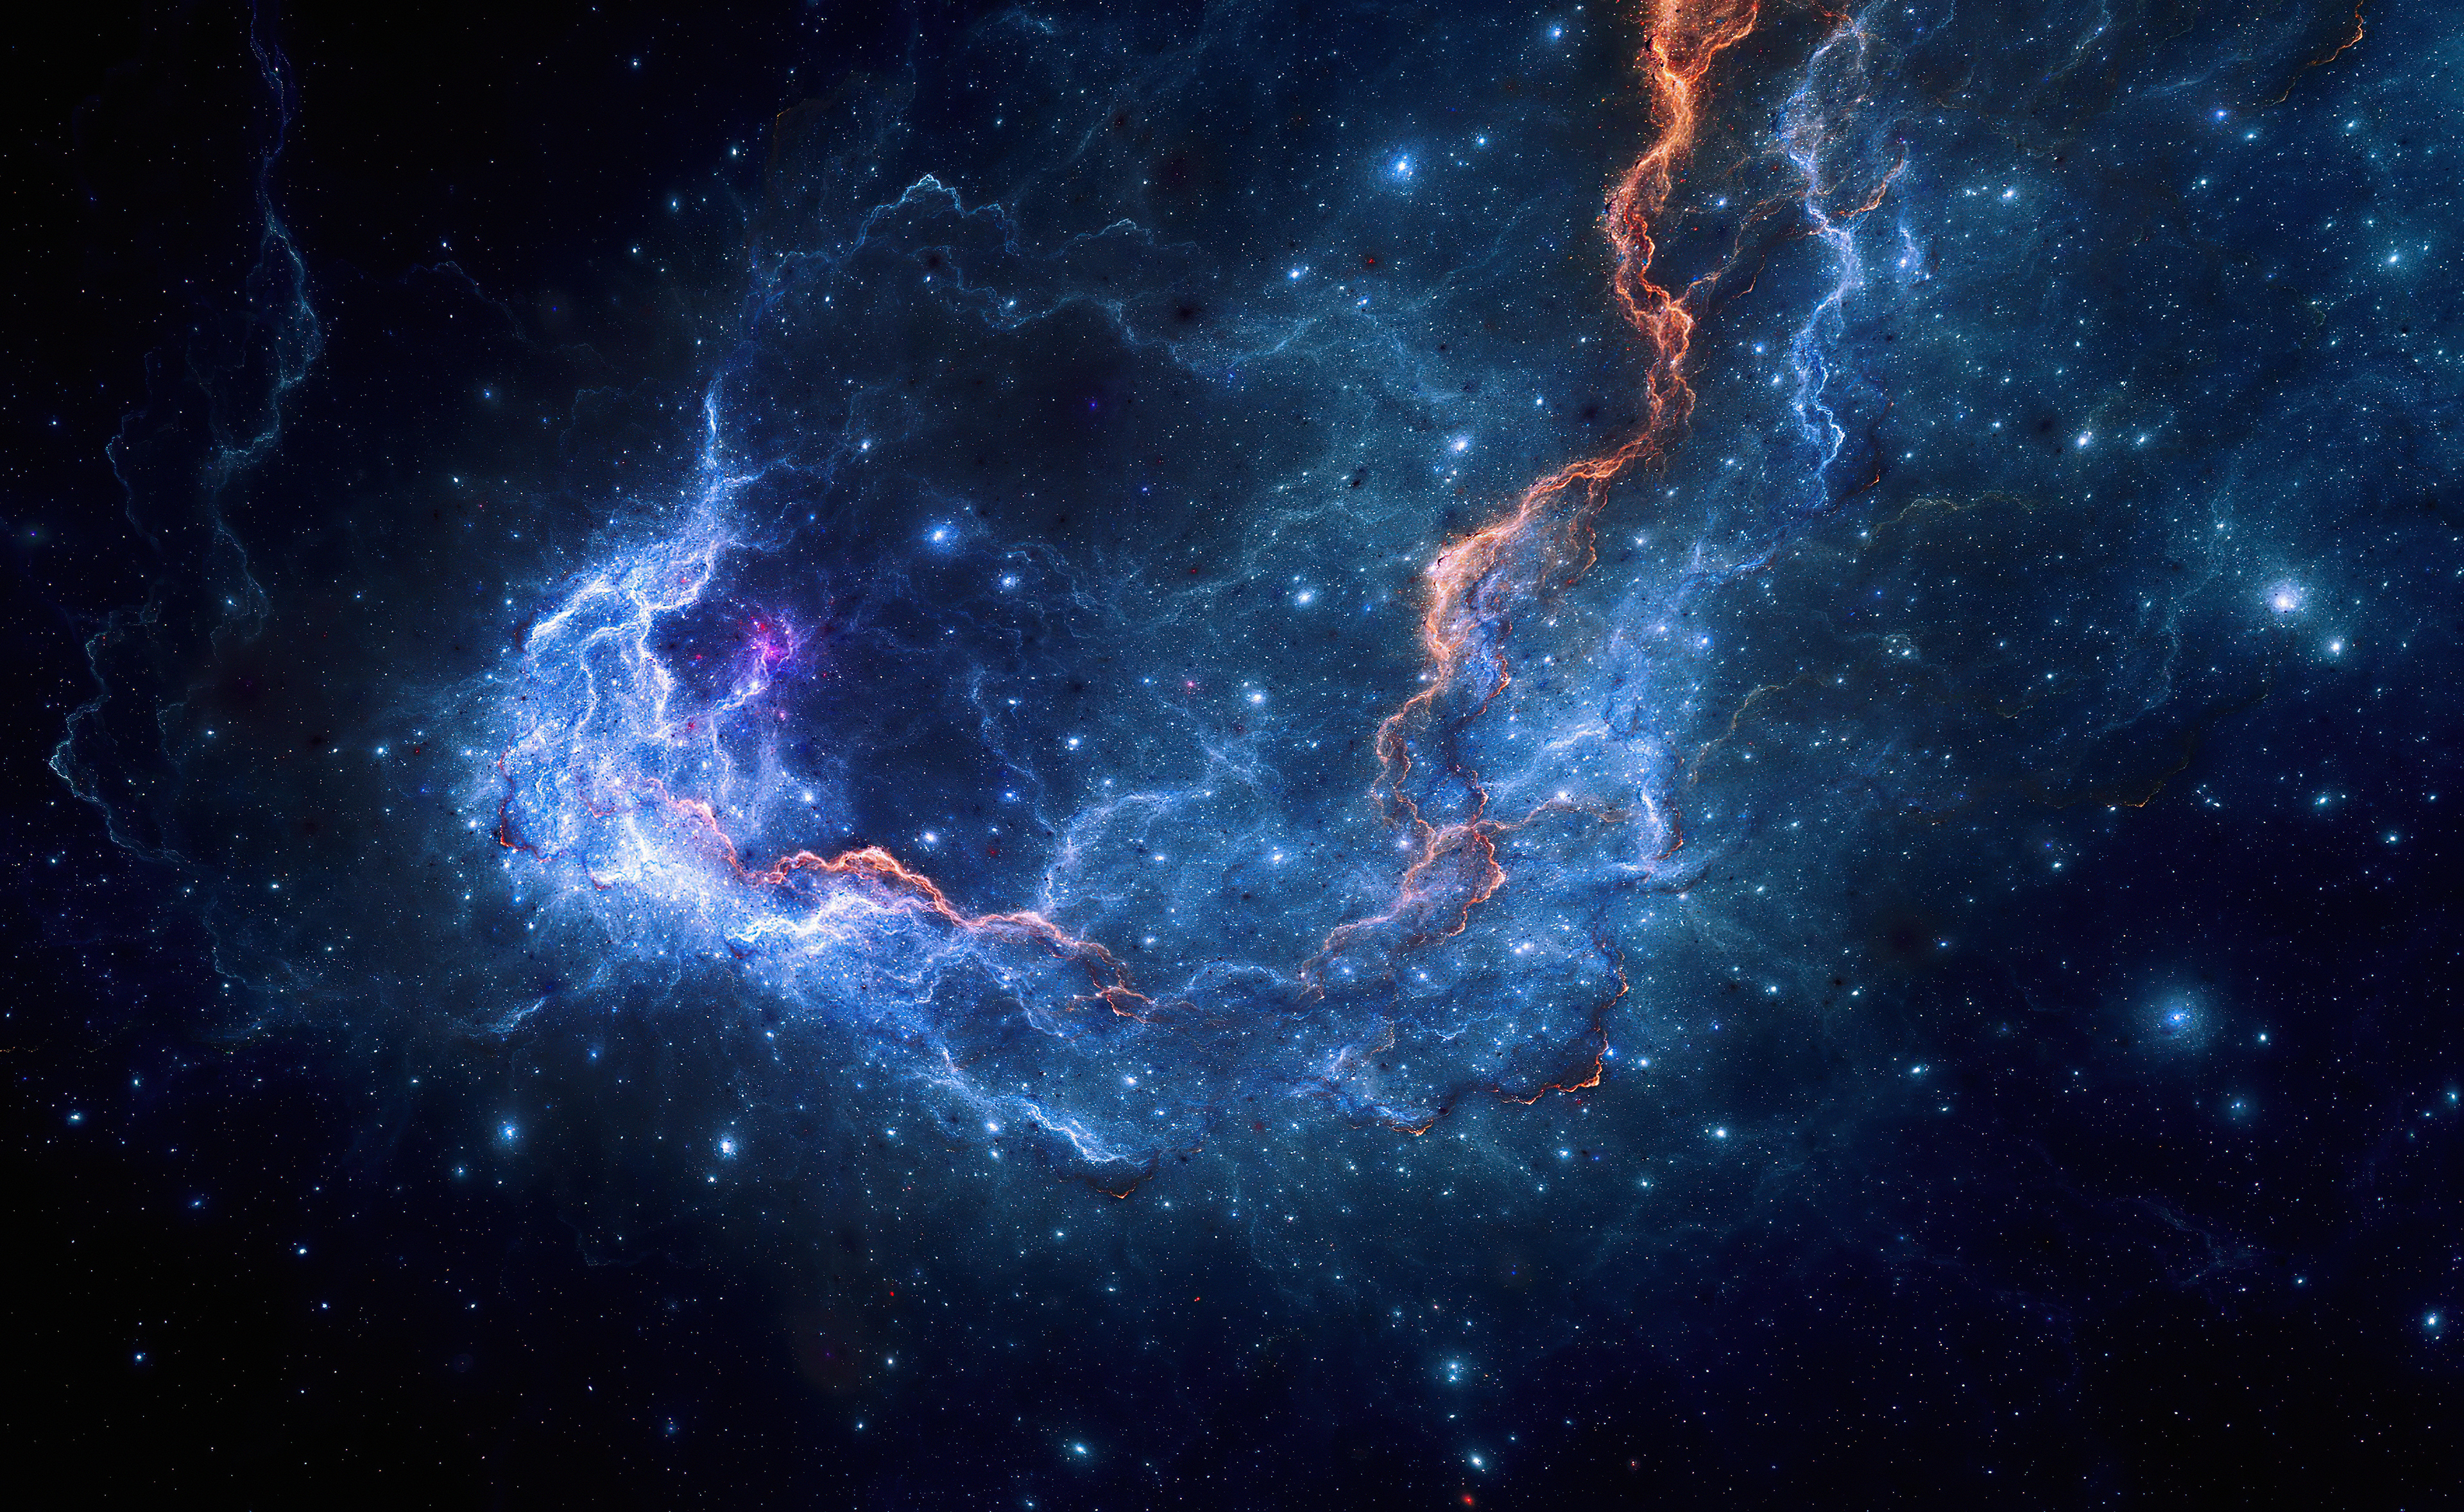 nebula stars space 4k 1629255910 - Nebula Stars Space 4k - Nebula Stars Space wallpapers, Nebula Stars Space 4k wallpapers